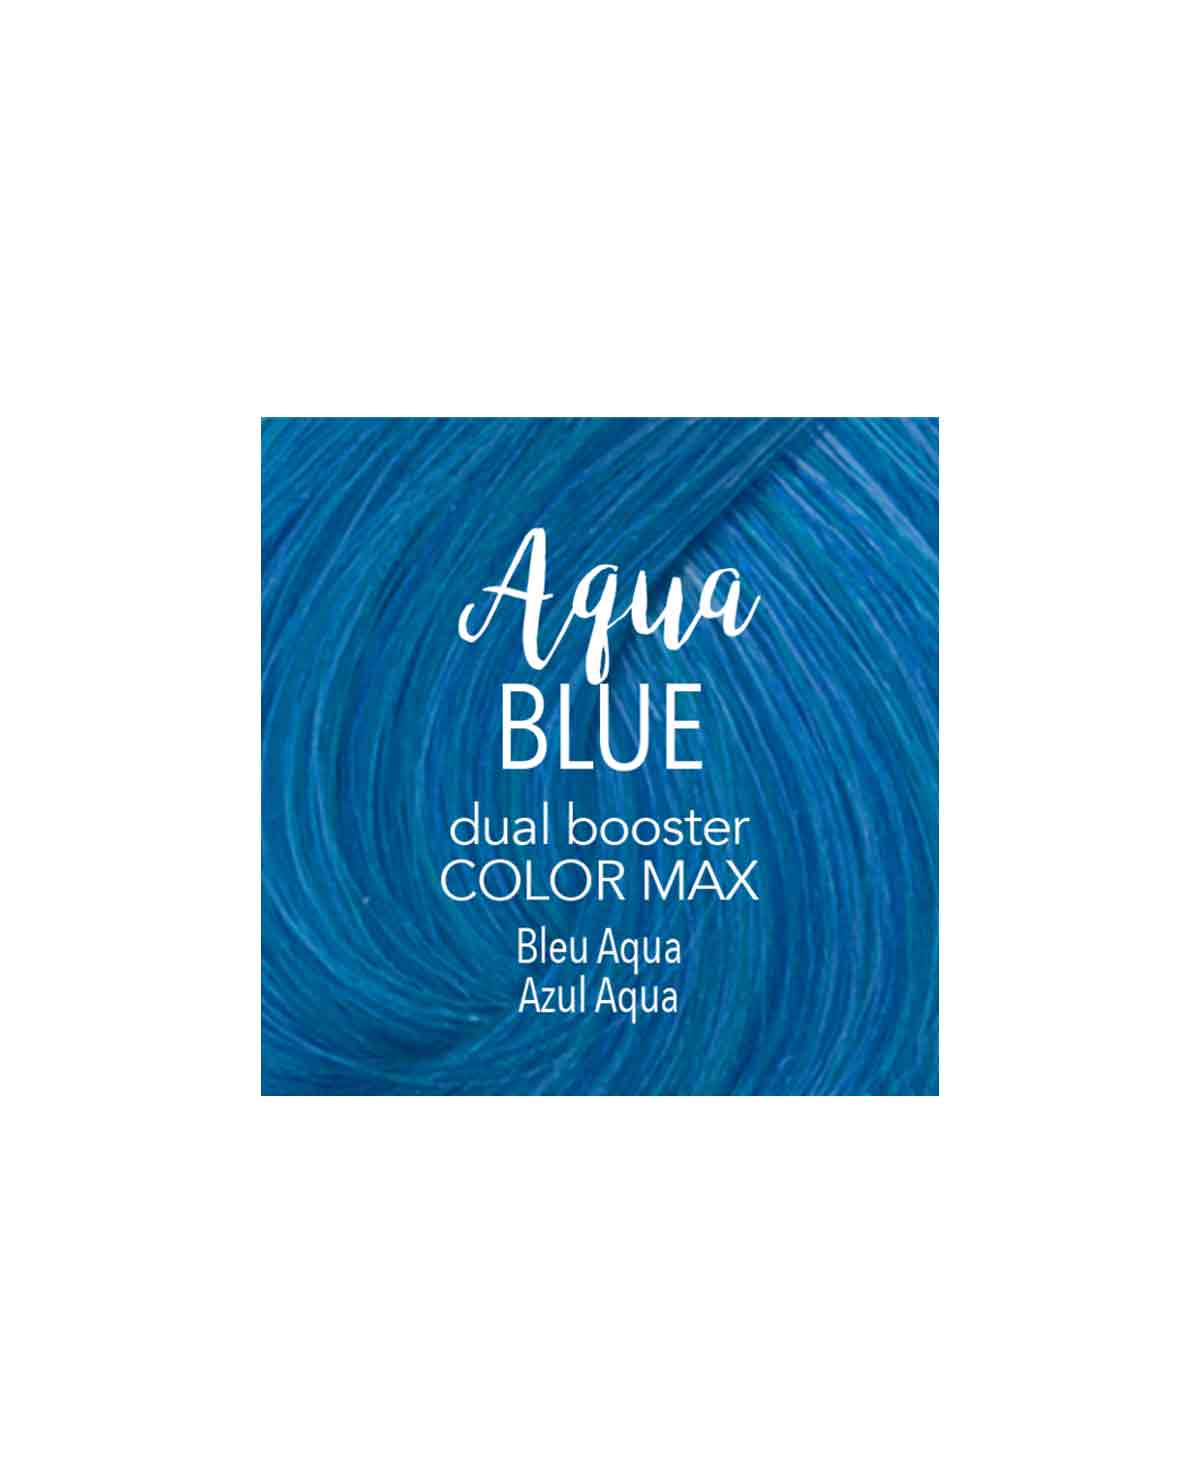 Mydentity Dual Booster Aqua Blue 58g